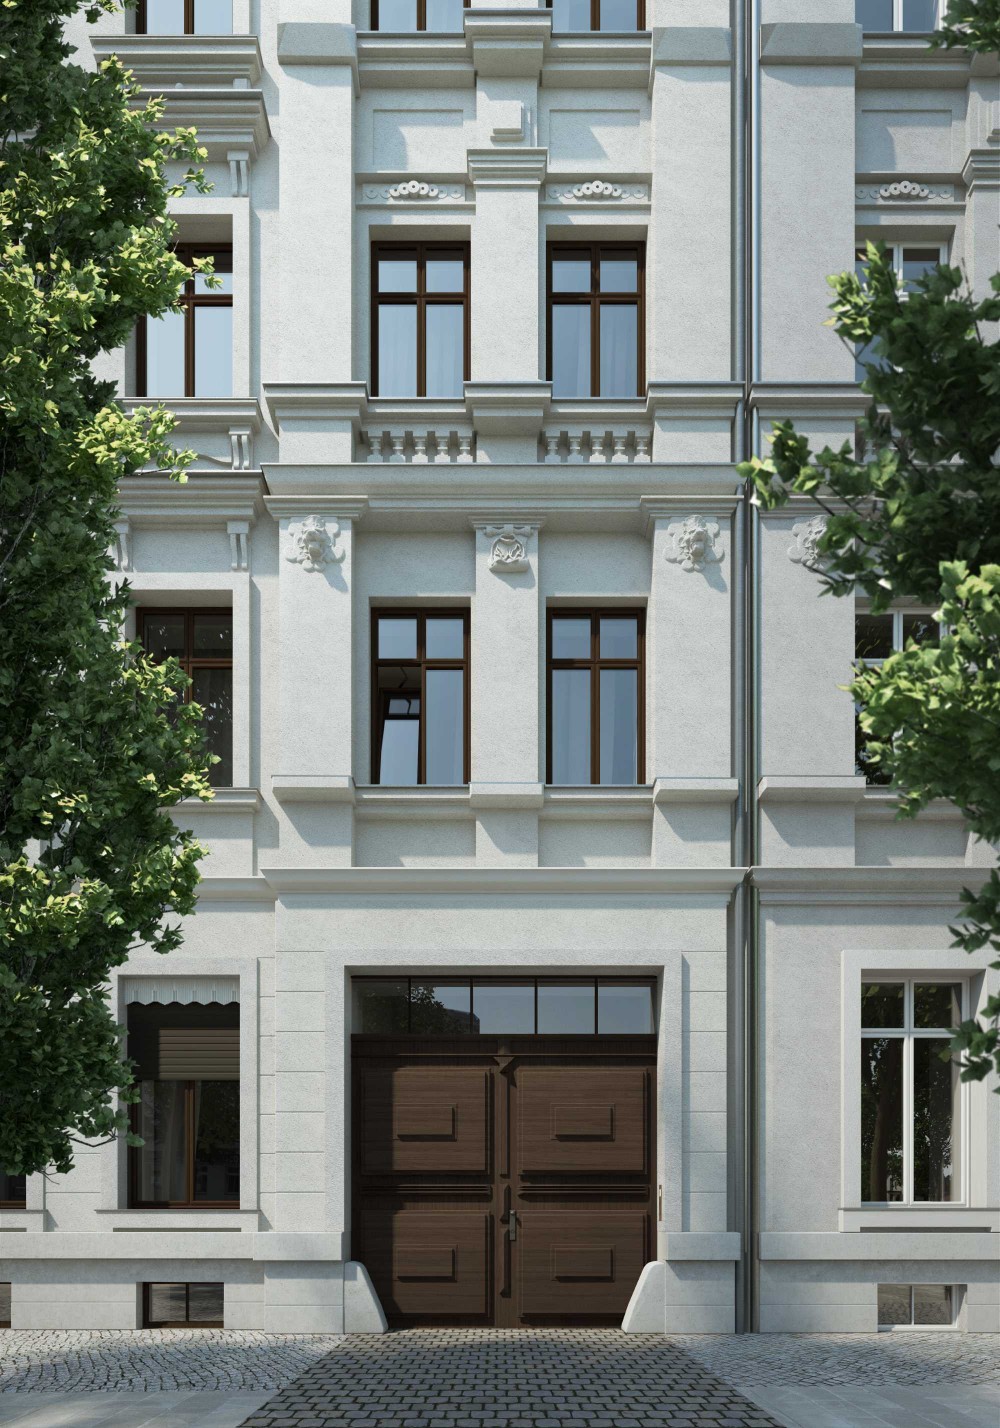 Visualisierungen Sanierung Denkmalschutz Mehrfamilienhaus, Breite Straße 7, Leipzig - Fix Visuals